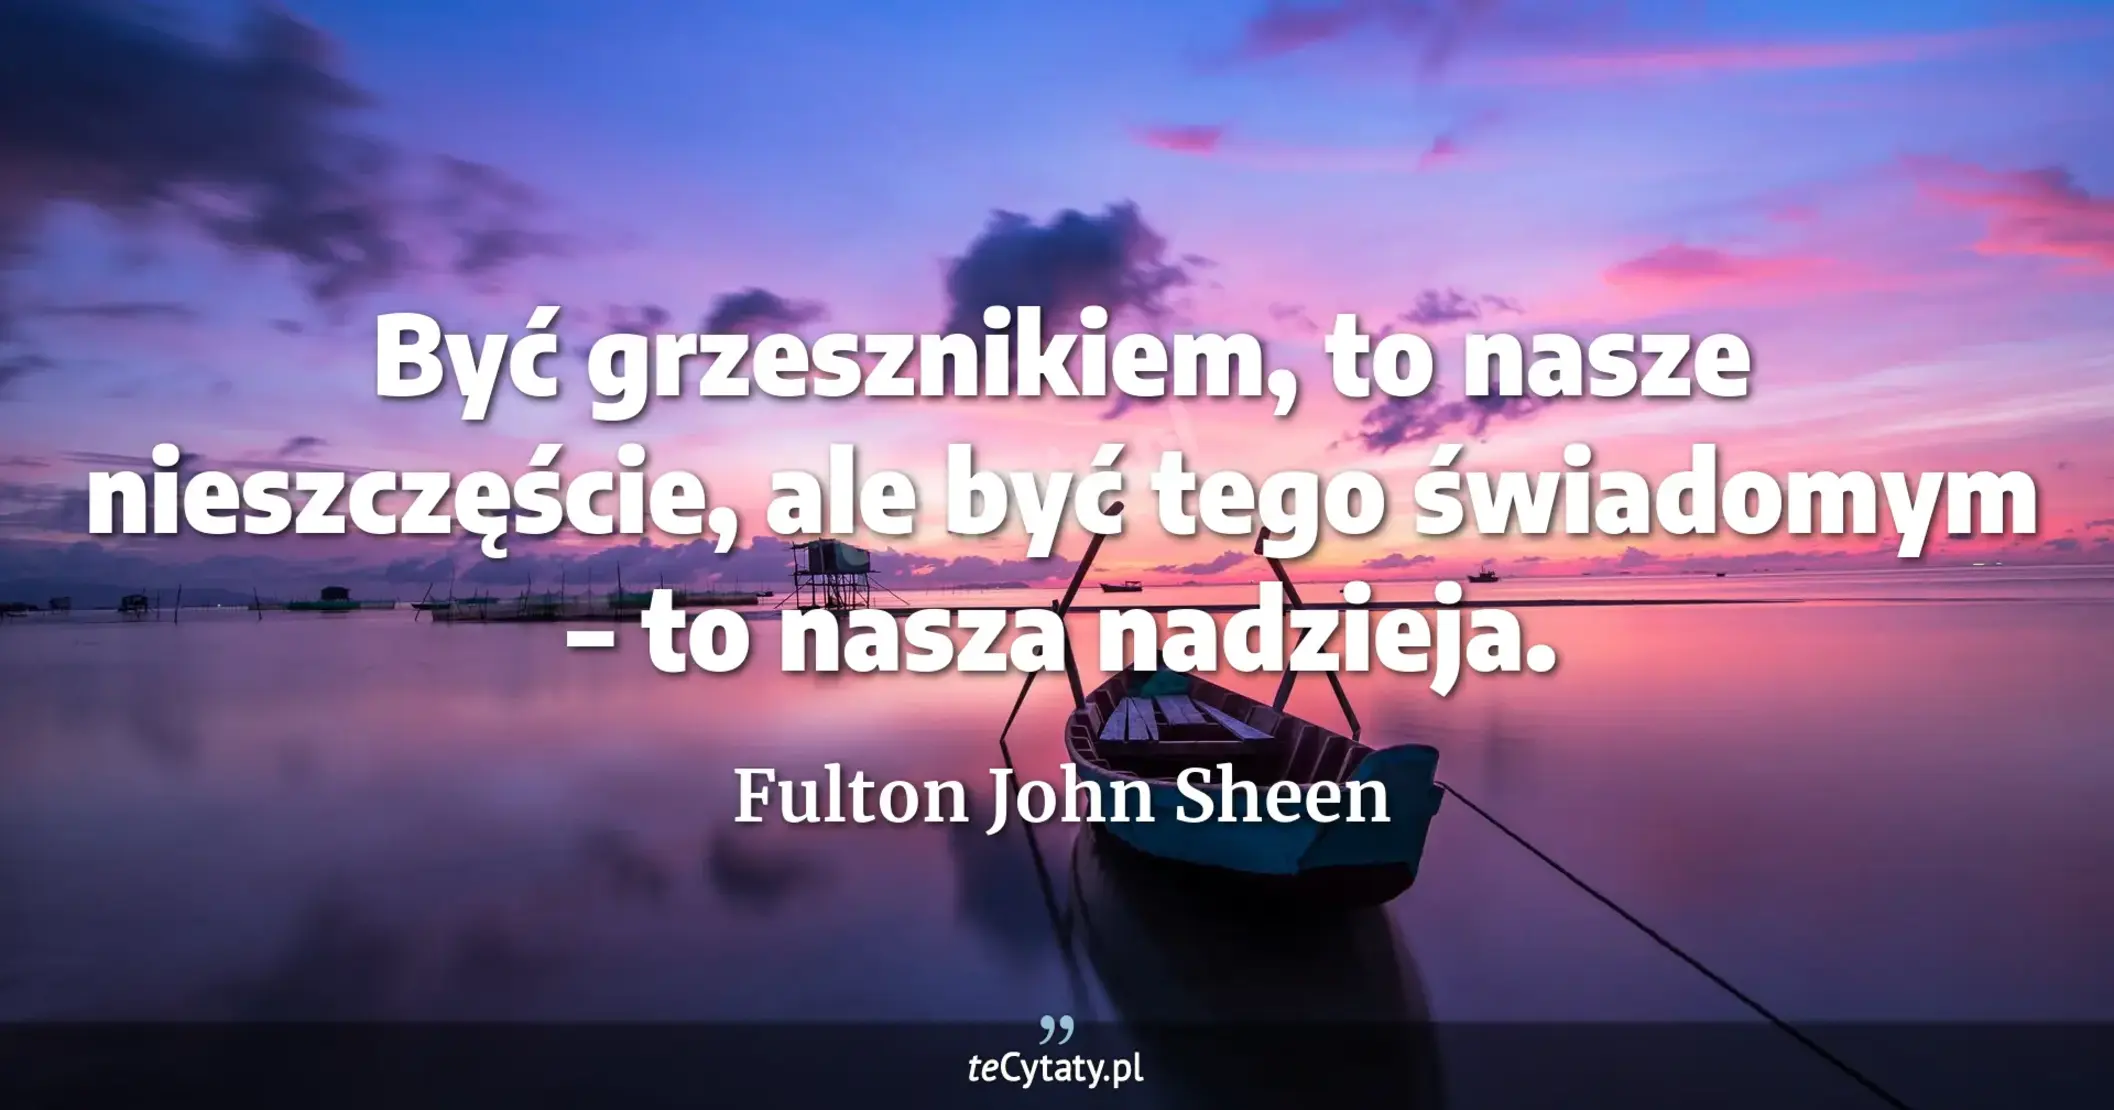 Być grzesznikiem, to nasze nieszczęście, ale być tego świadomym – to nasza nadzieja. - Fulton John Sheen